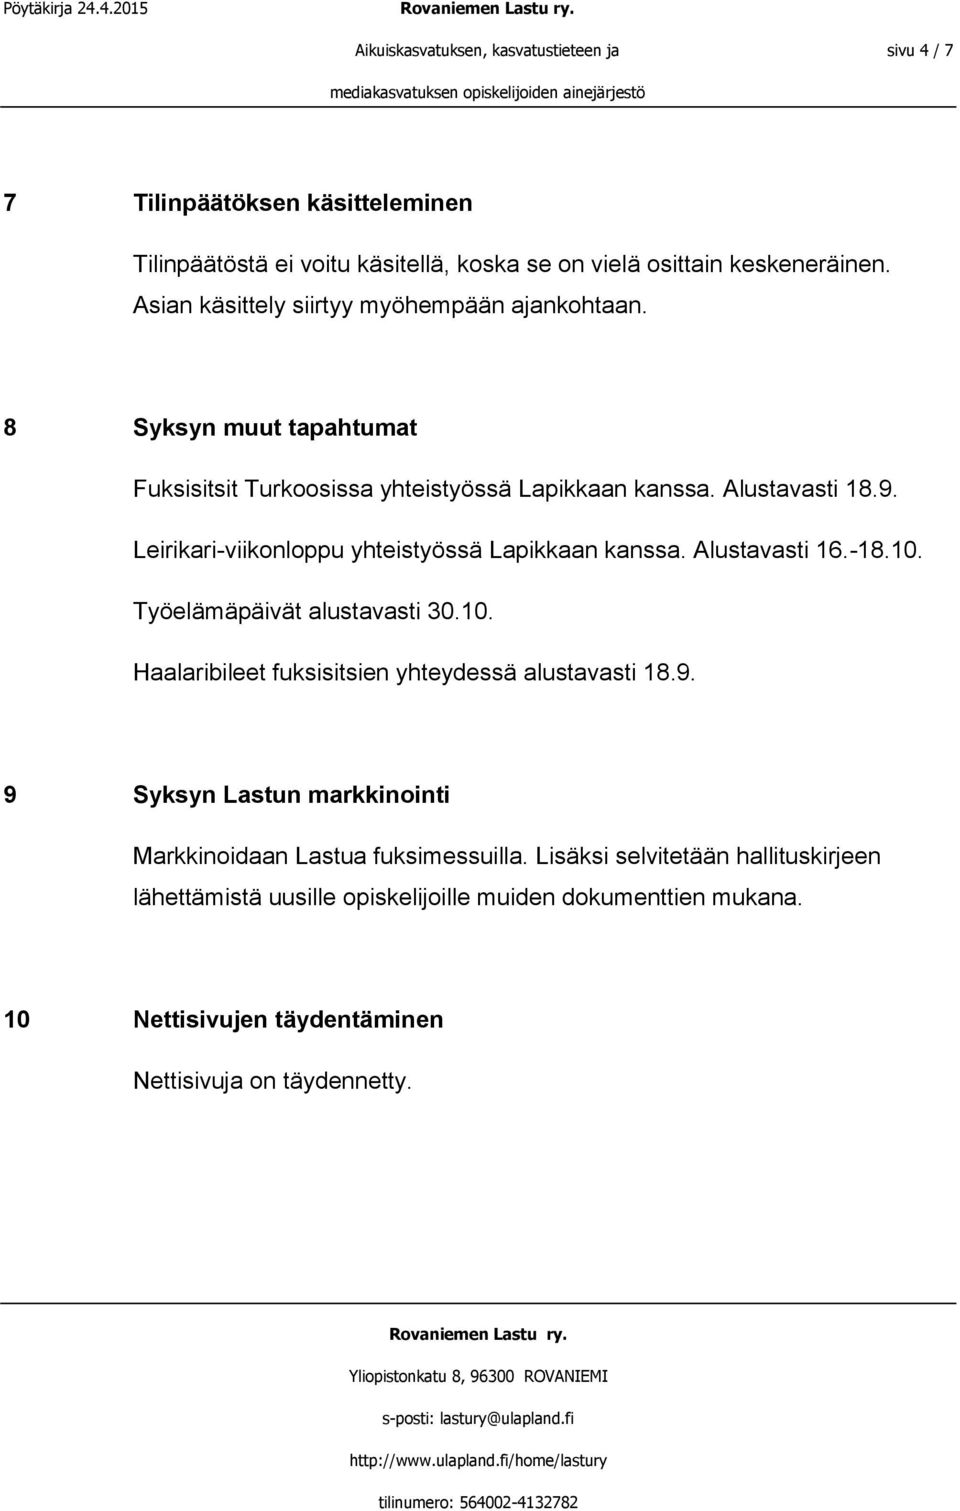 Leirikari-viikonloppu yhteistyössä Lapikkaan kanssa. Alustavasti 16.-18.10. Työelämäpäivät alustavasti 30.10. Haalaribileet fuksisitsien yhteydessä alustavasti 18.9.